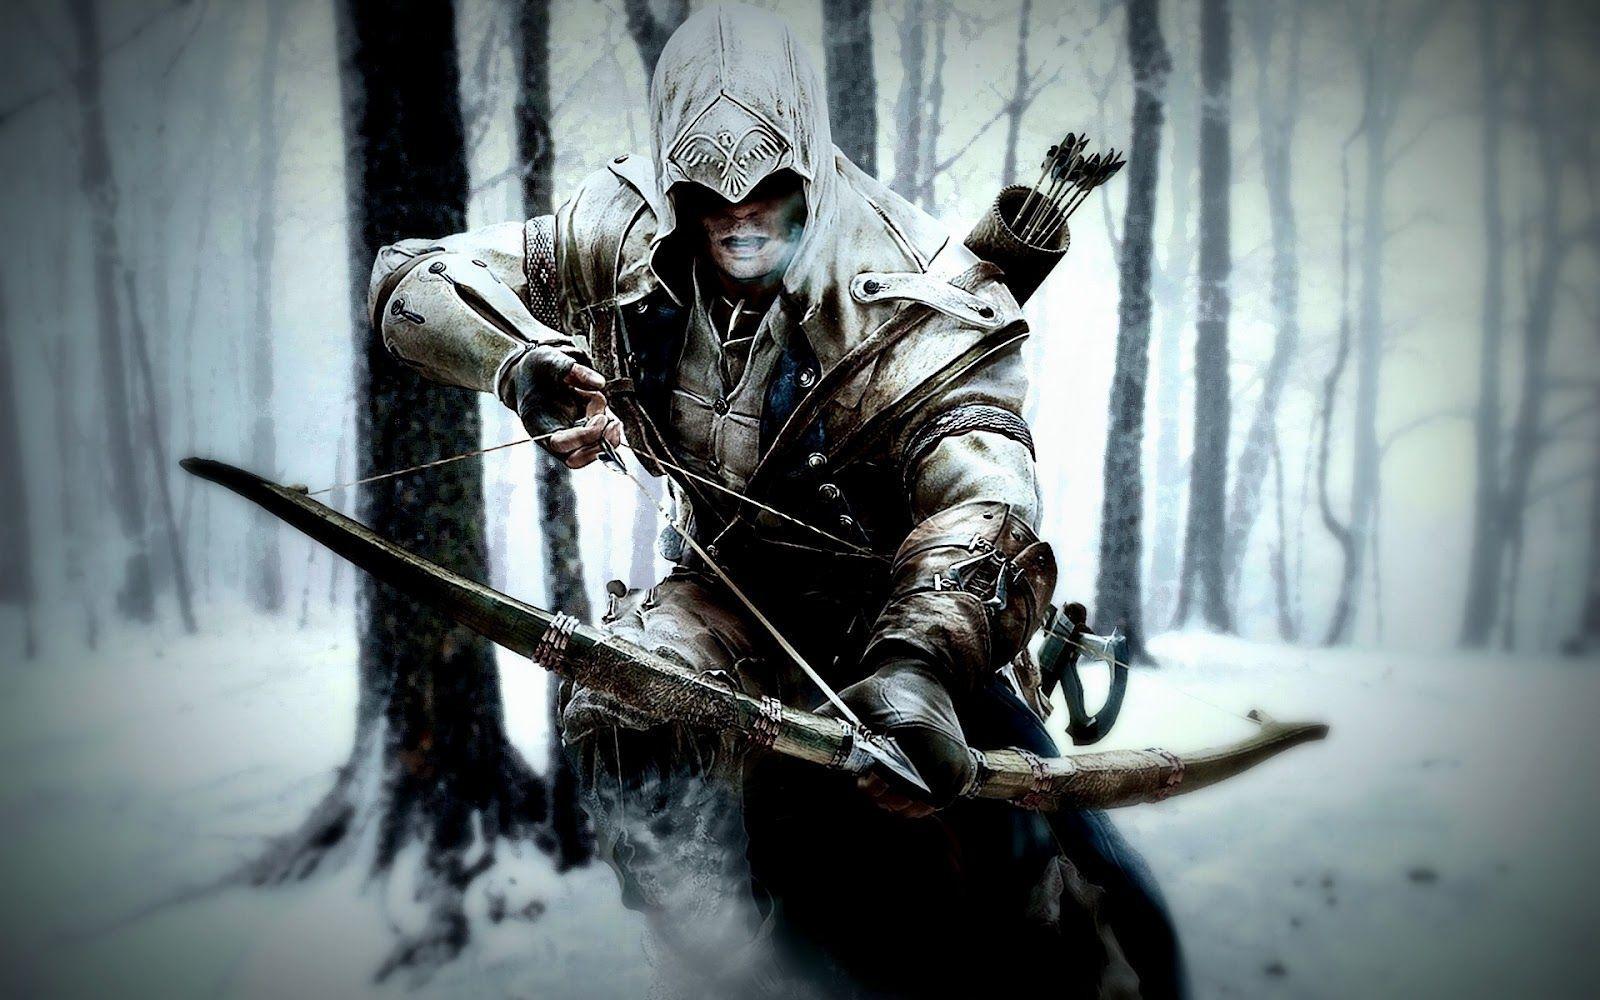 Ready To Shoot Arrow Assassins Creed 3 HD Wallpaper Vvallpaper Net